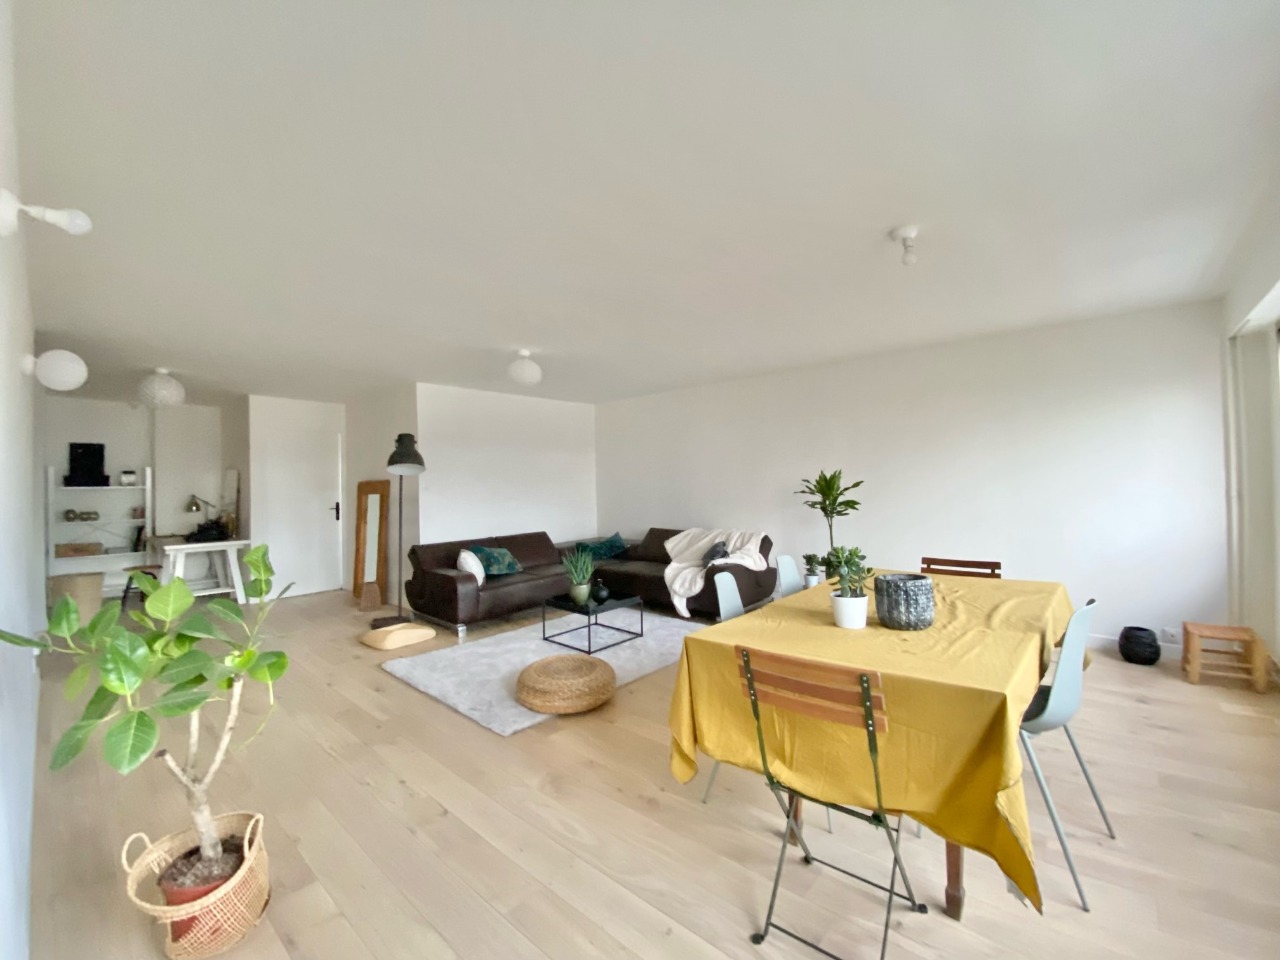 Appartement entierement renove 3 chambres et parkings Photo 2 - Paris Lille Immobilier